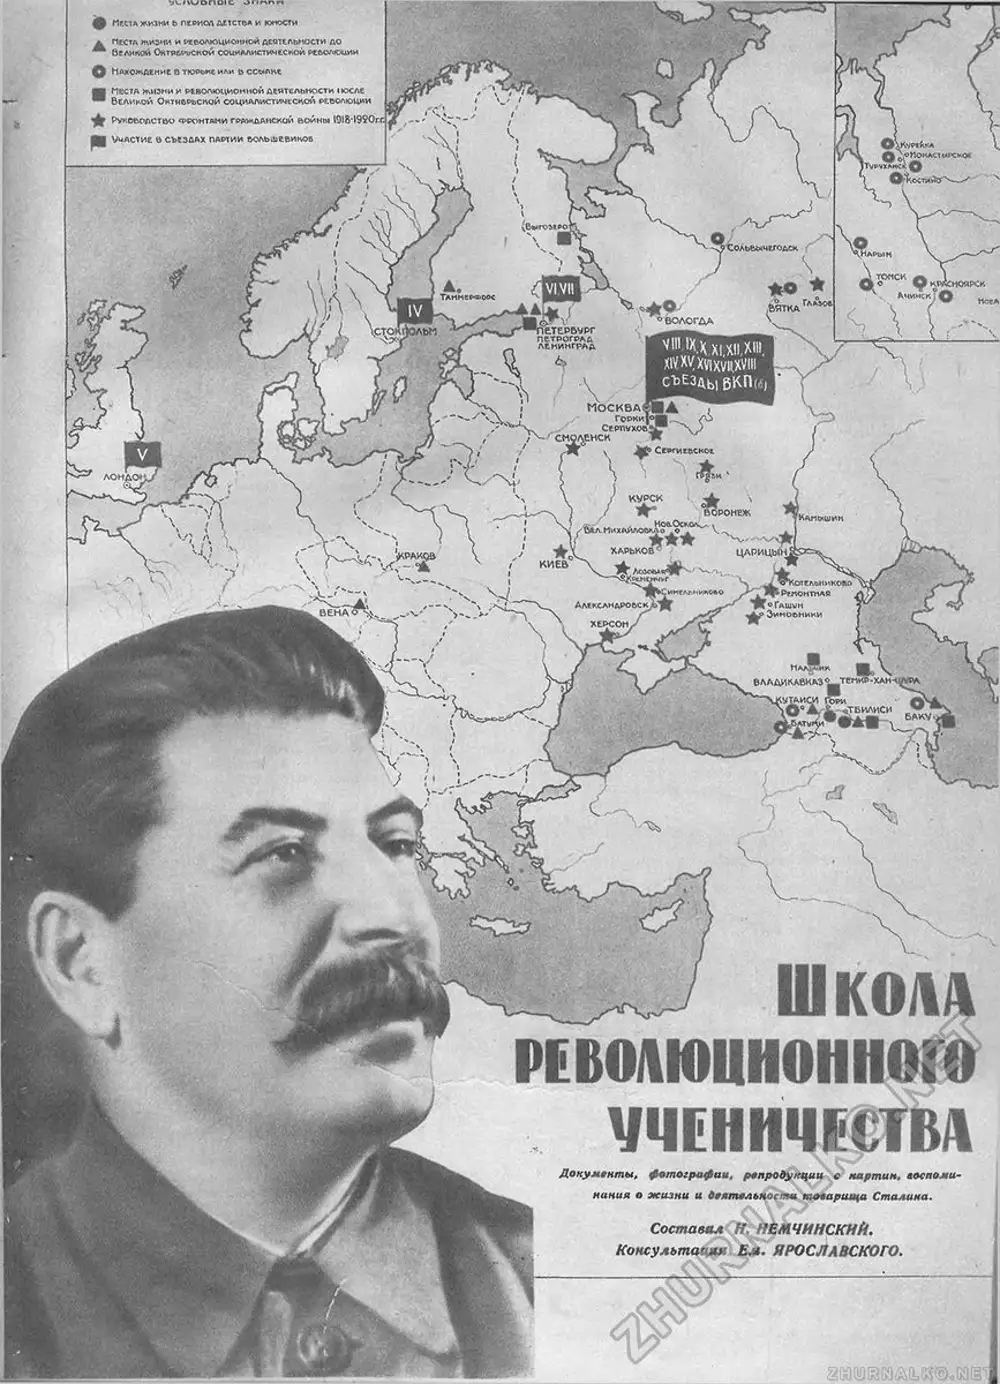 Сталин жизнь и деятельность. Сталин 1917. Иосиф Сталин в 1917 году. Сталин 1939. Революционная деятельность до 1917 года Сталин.